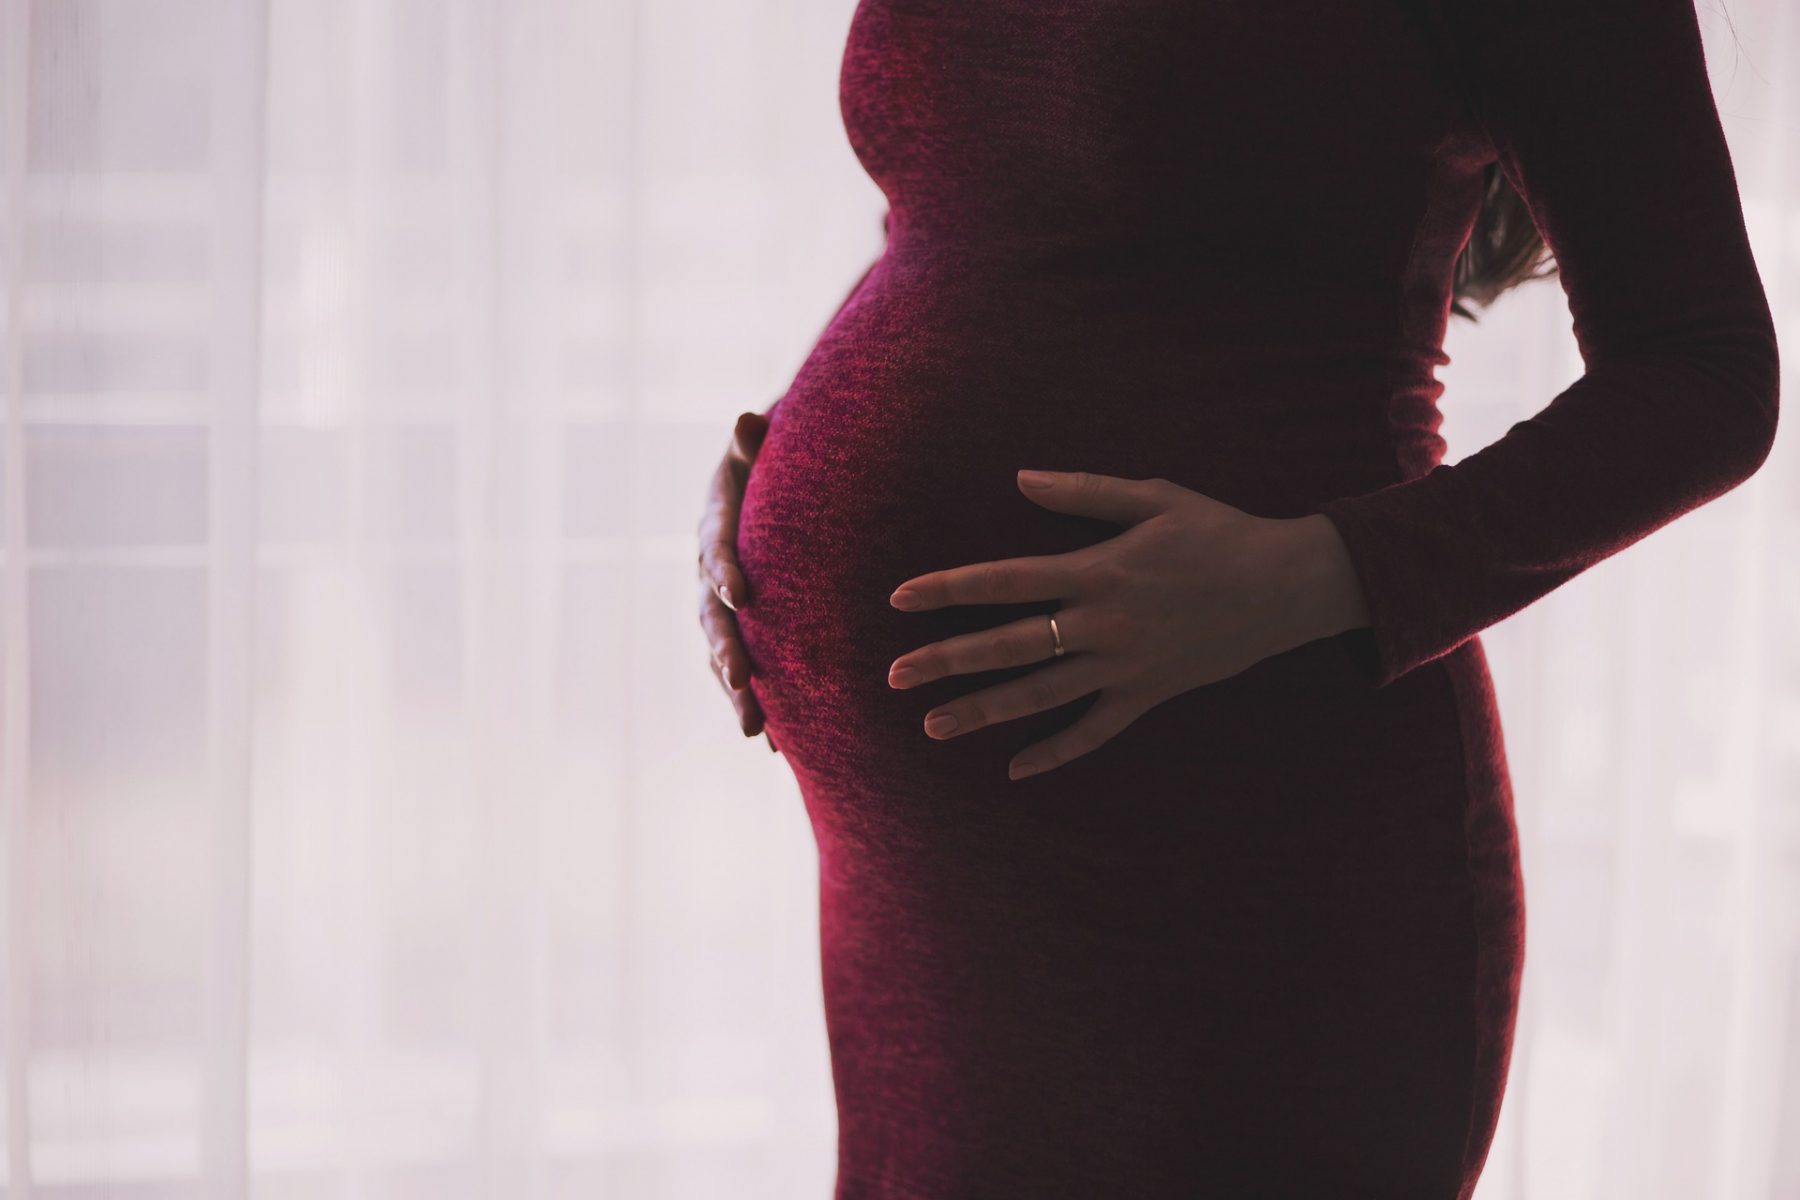 Εμβρυϊκή θνησιμότητα: Το ποσοστό εμβρυϊκής θνησιμότητας παραμένει σταθερό παρά την πανδημία